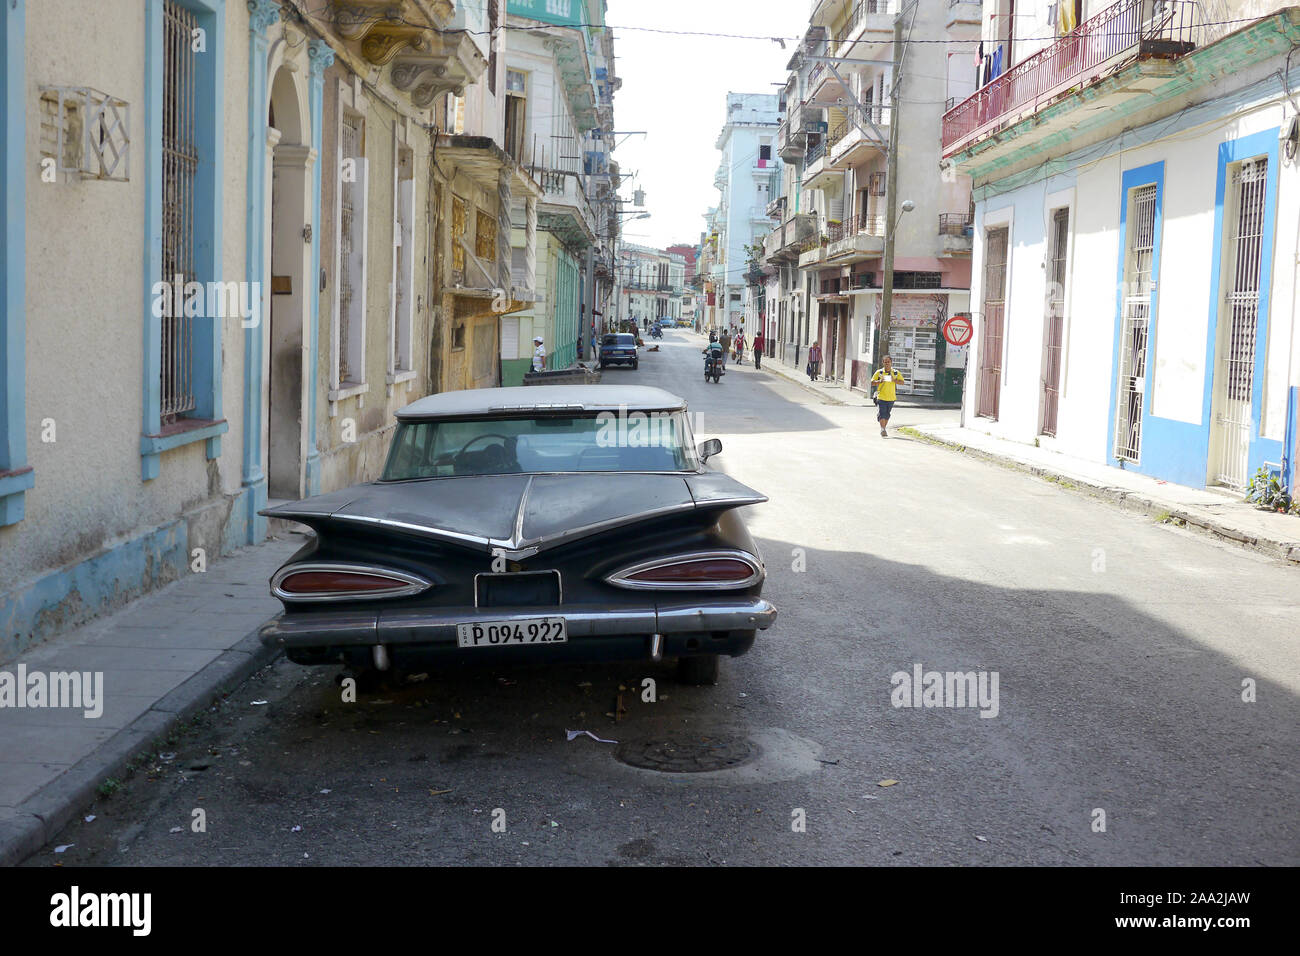 Havanna, Kuba - 20. Dezember 2016: Alte amerikanische Autos sind immer noch eine gemeinsame Sicht in den Gassen von Havanna, Kuba. Viele werden als Taxis für beide Touri verwendet Stockfoto